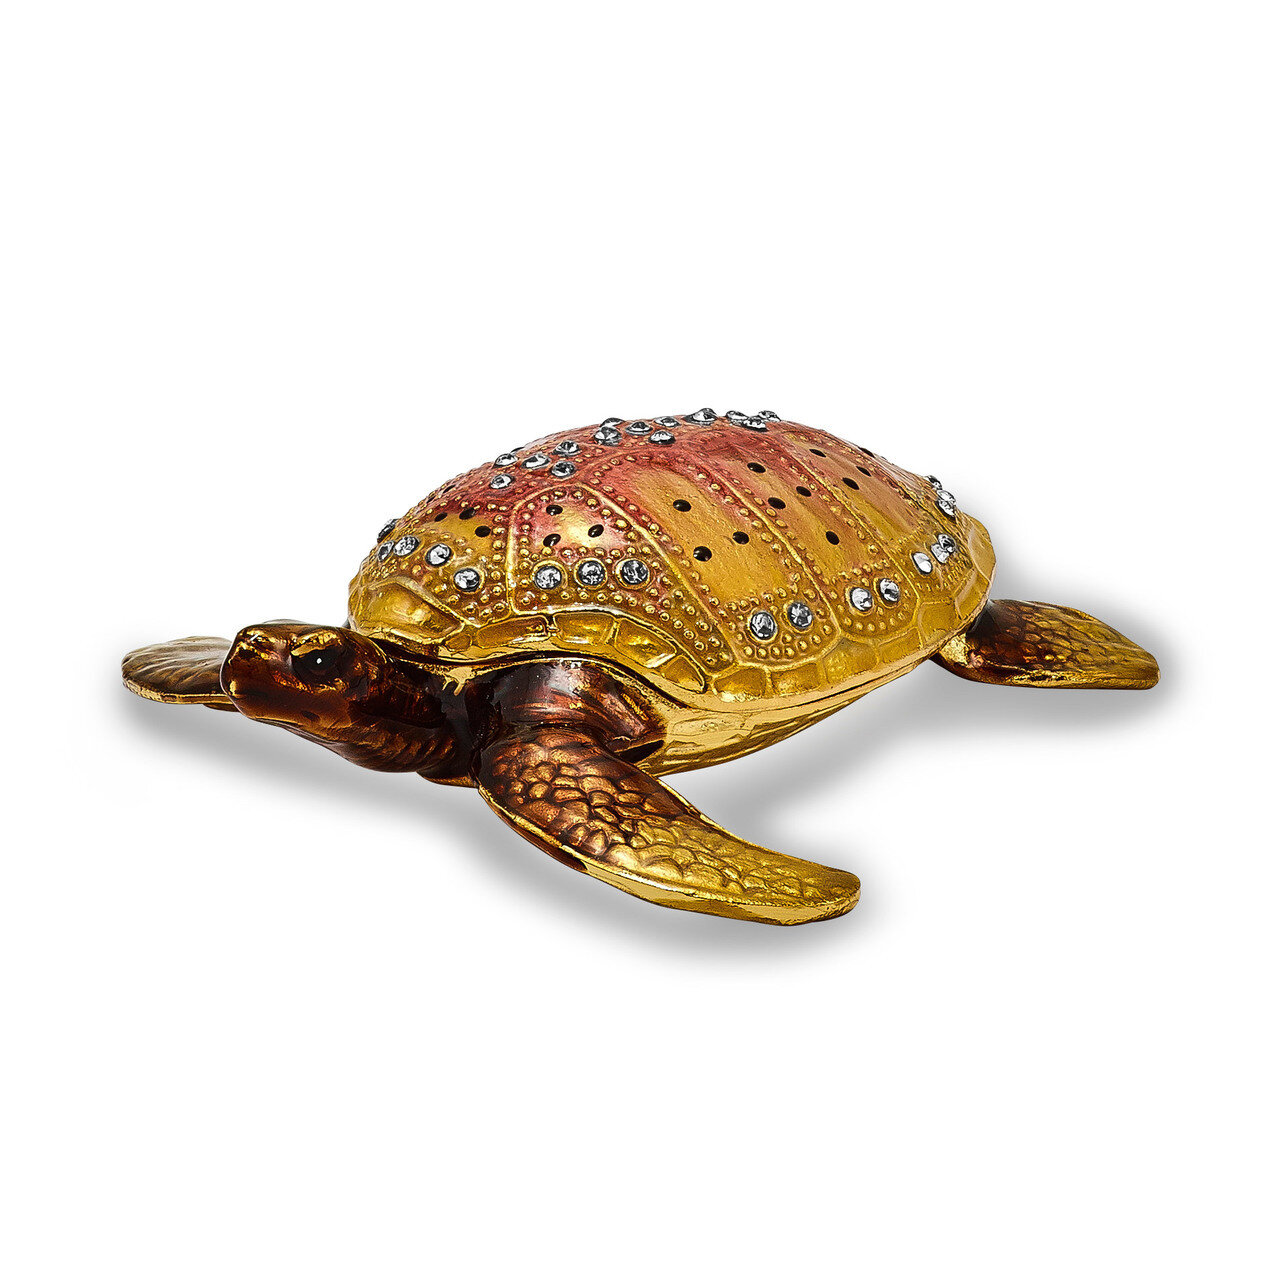 Loggerhead Turtle Trinket Box Enamel on Pewter by Jere